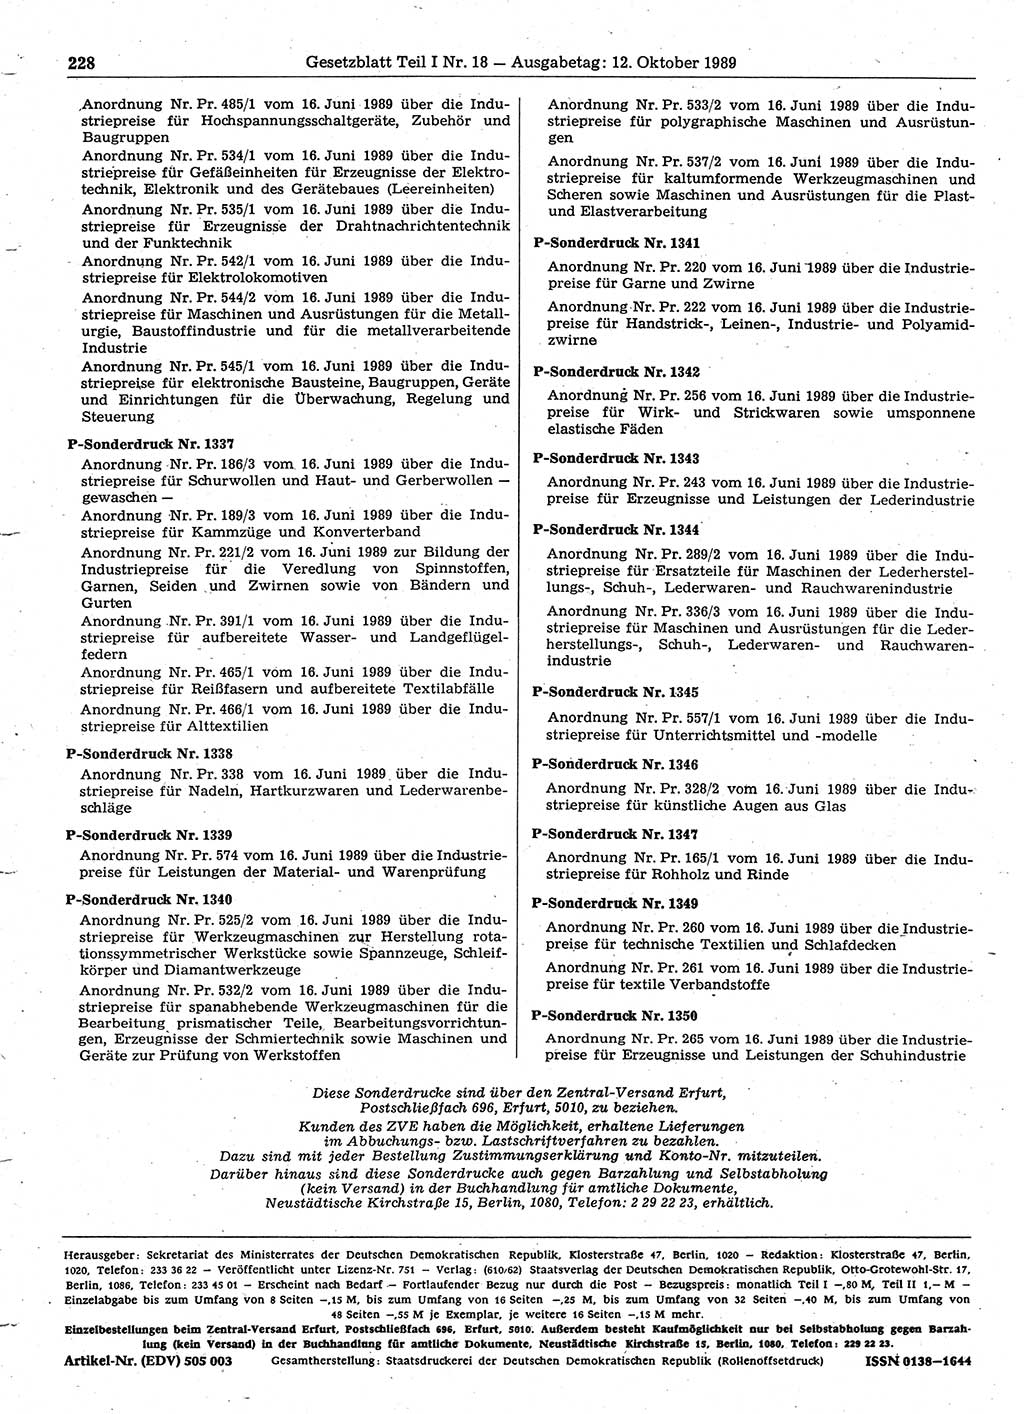 Gesetzblatt (GBl.) der Deutschen Demokratischen Republik (DDR) Teil Ⅰ 1989, Seite 228 (GBl. DDR Ⅰ 1989, S. 228)